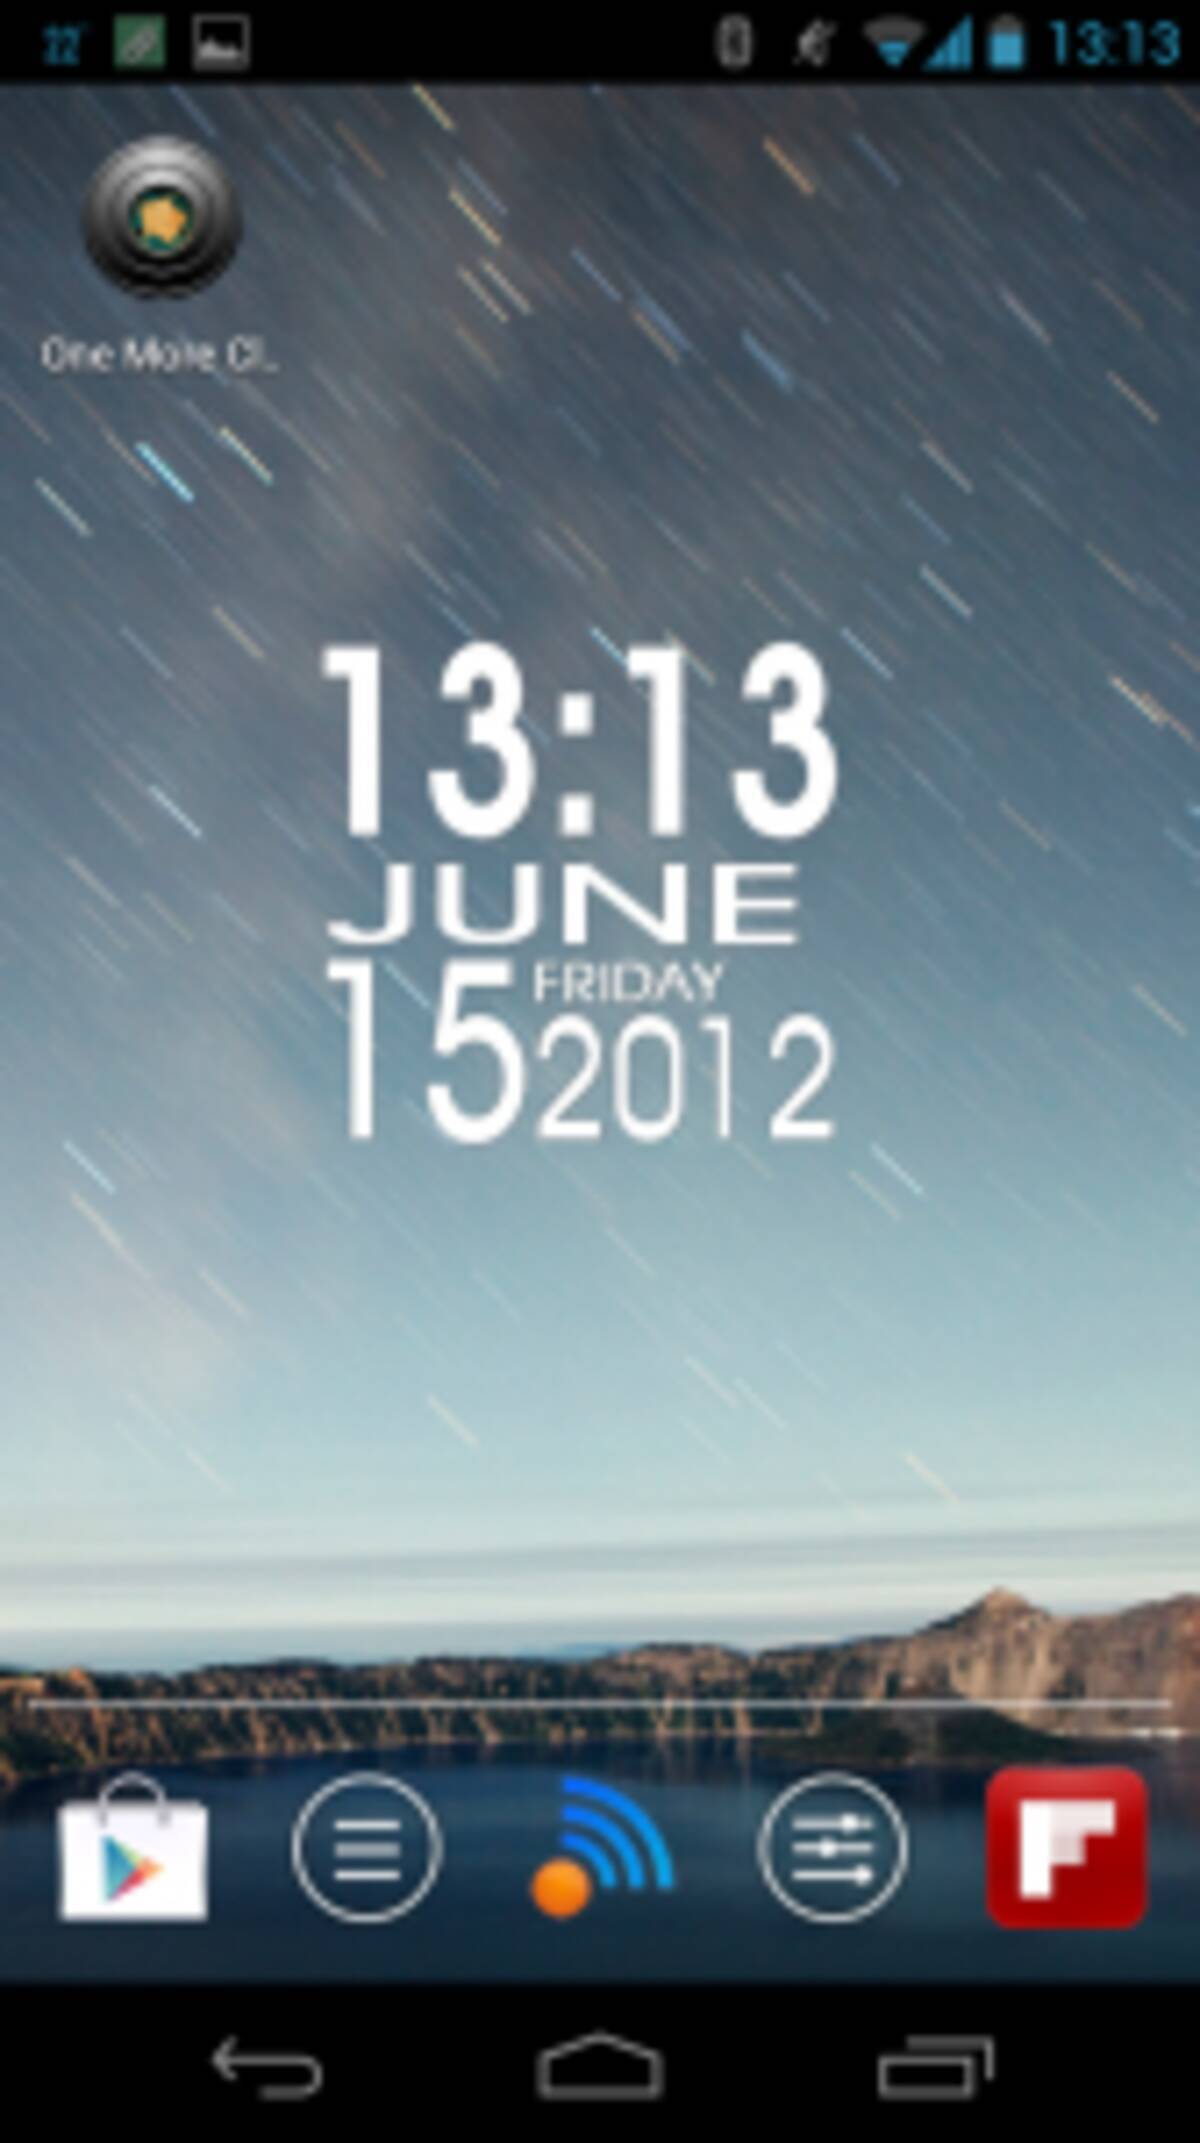 One More Clock Widget Free アート クールな時計ウィジェットでスマホを飾る 無料androidアプリ 12年6月16日 エキサイトニュース